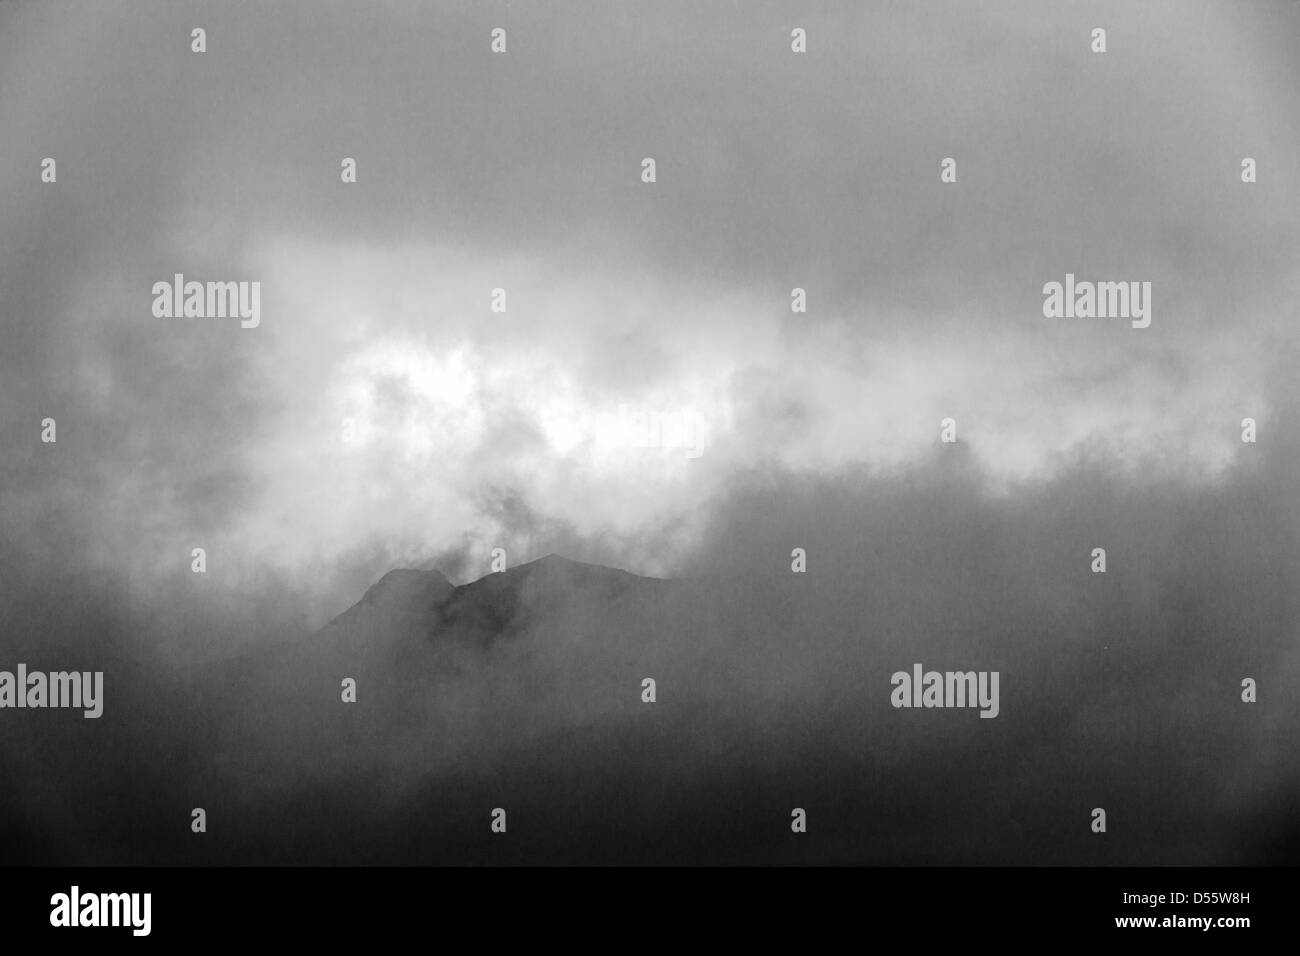 Visualizzazione bianco e nero di nuvole basse, la foschia e la nebbia oscurano parzialmente l'Alaska Range, Parco Nazionale di Denali, Alaska, STATI UNITI D'AMERICA Foto Stock